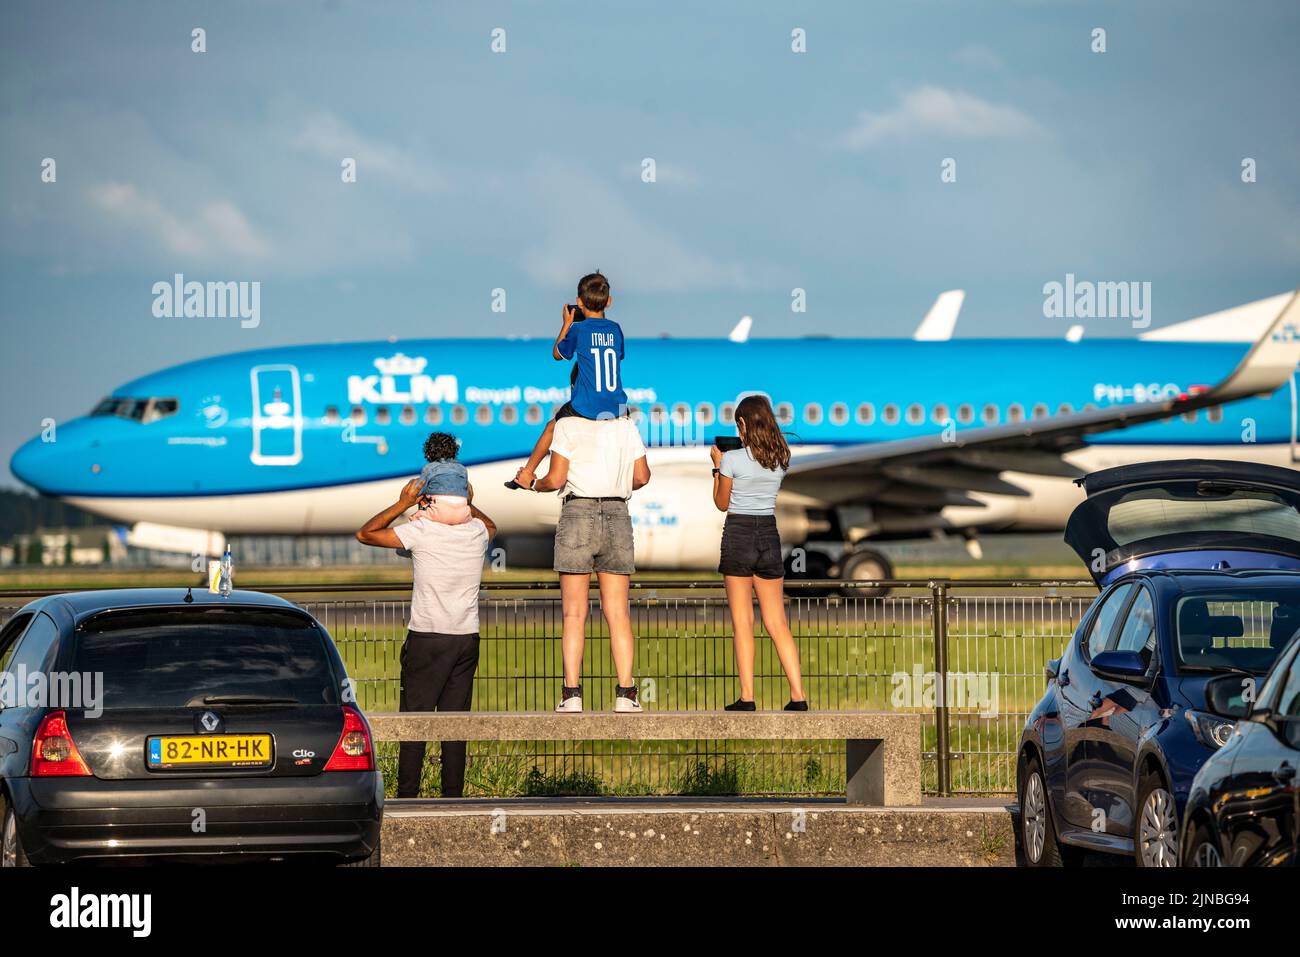 Amsterdam Shiphol Airport, Polderbaan, una de las 6 pistas, spotter spot, ver los aviones de cerca, KLM, Foto de stock